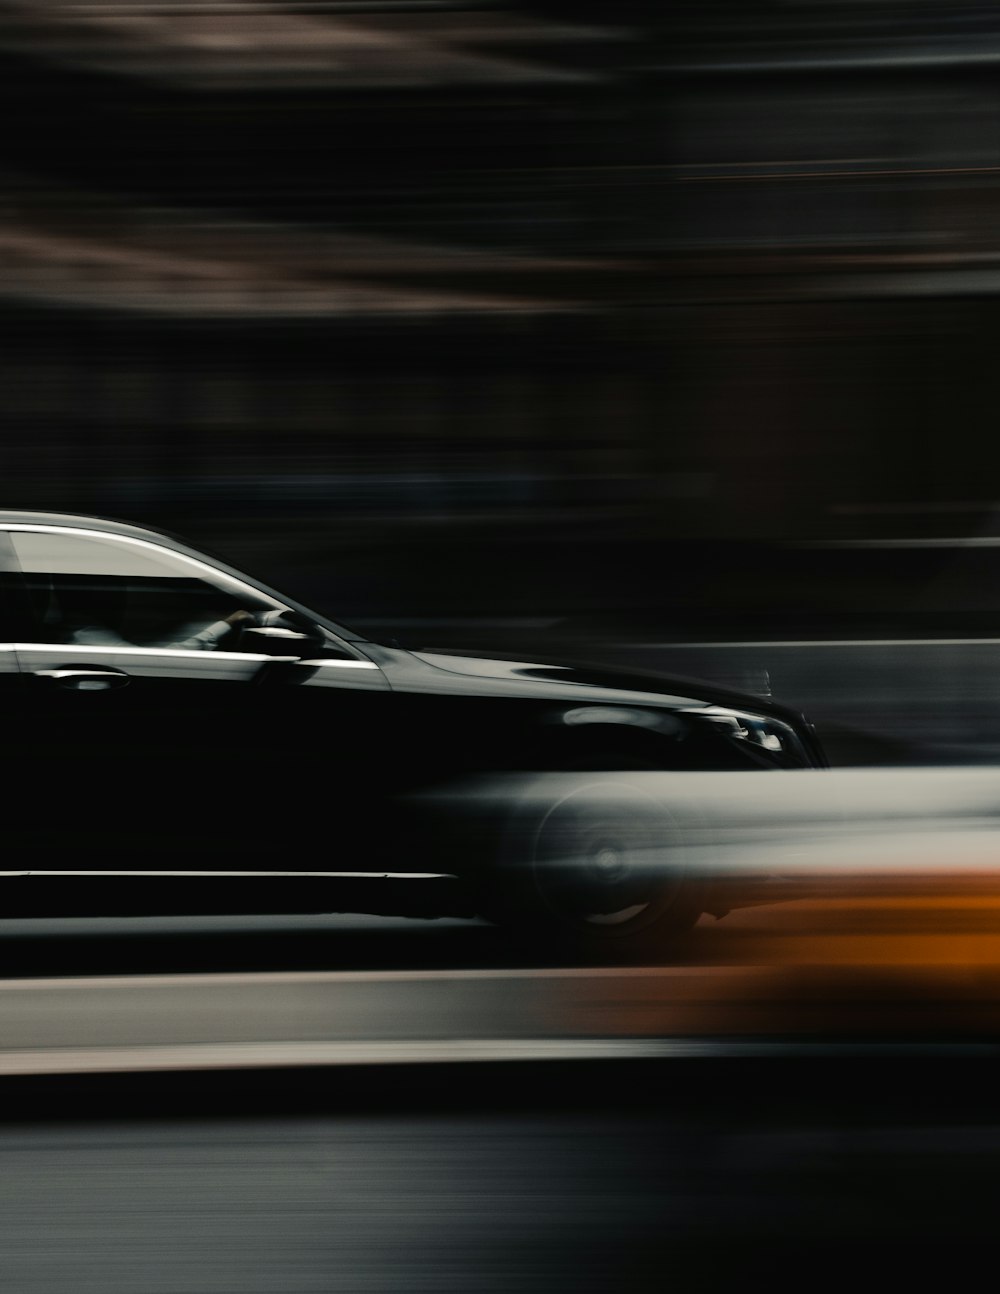 a blurry photo of a car driving down a street